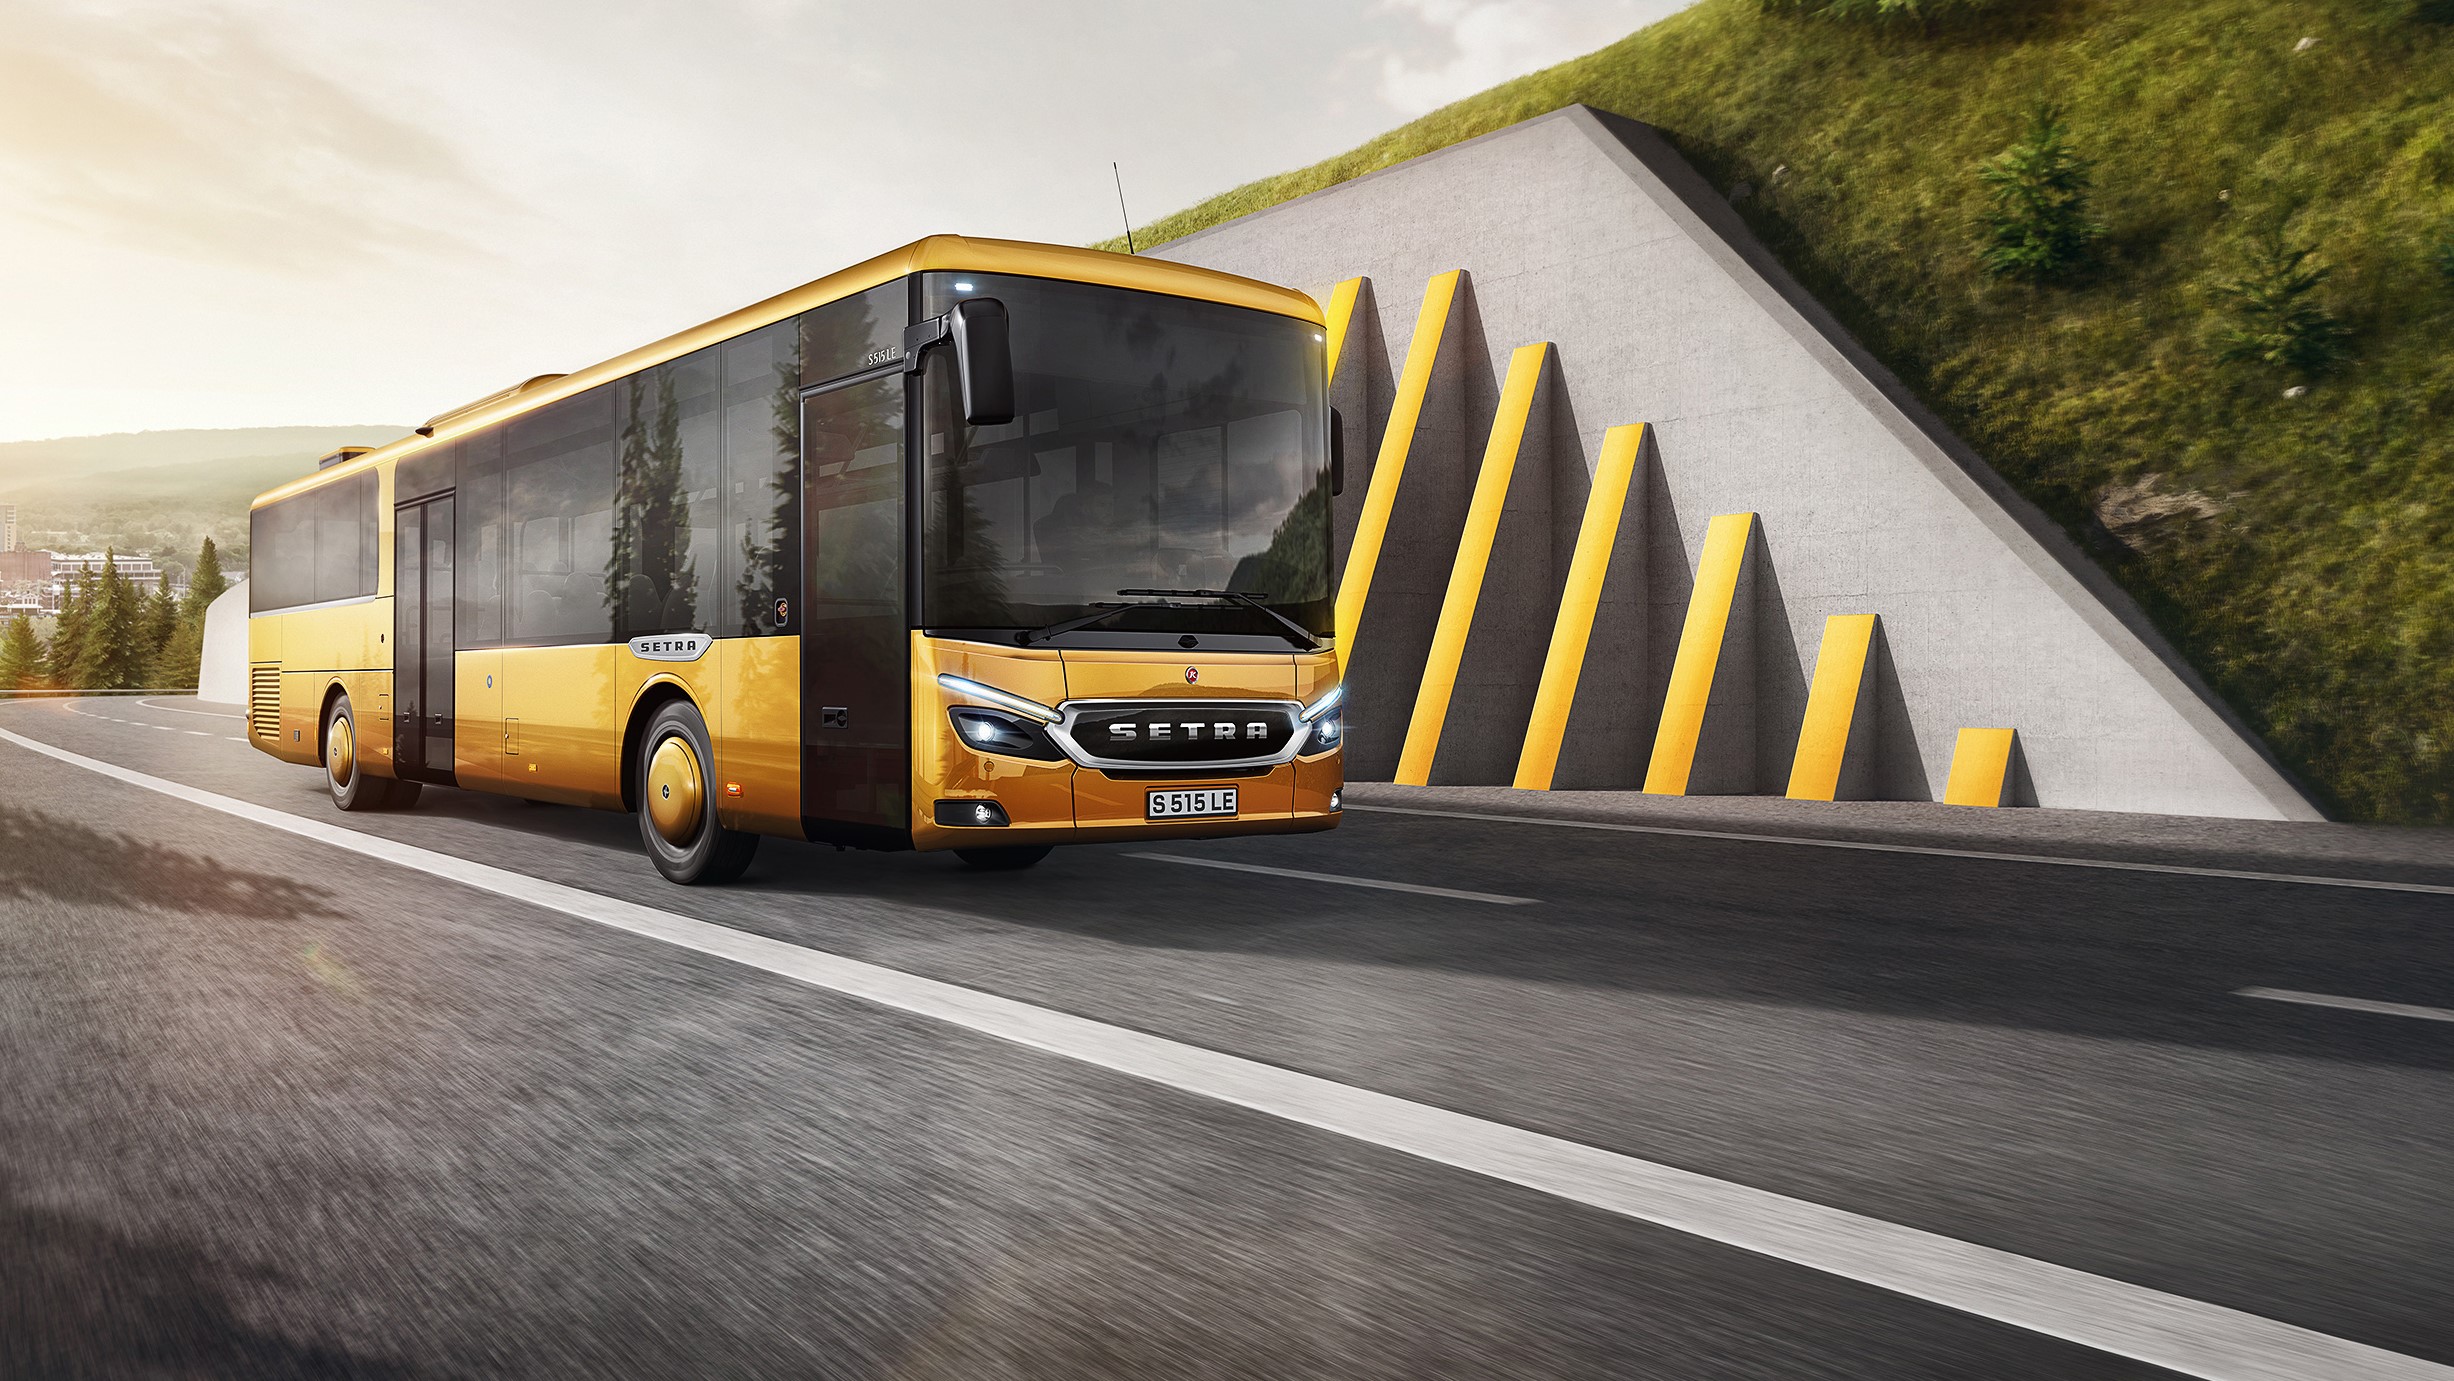 Setrin novi linijski avtobus bo skrbel tudi za večji dobiček operaterjev